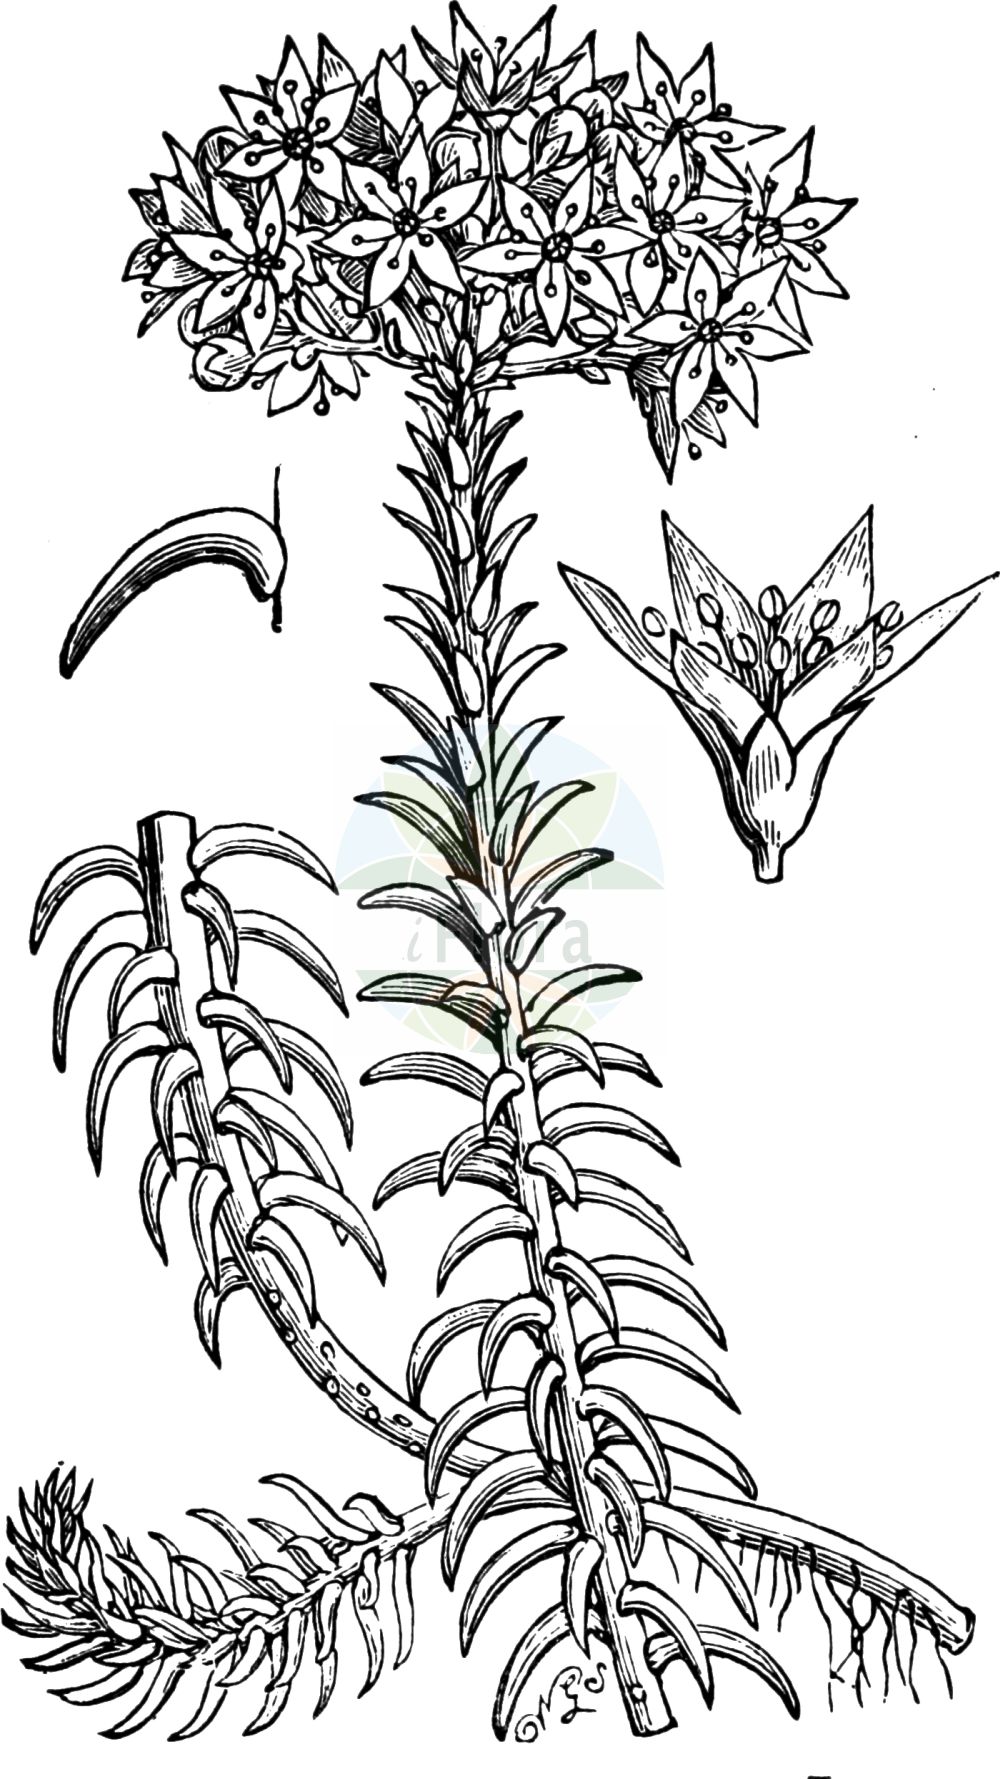 Historische Abbildung von Sedum rupestre (Felsen-Fetthenne - Reflexed Stonecrop). Das Bild zeigt Blatt, Bluete, Frucht und Same. ---- Historical Drawing of Sedum rupestre (Felsen-Fetthenne - Reflexed Stonecrop). The image is showing leaf, flower, fruit and seed.(Sedum rupestre,Felsen-Fetthenne,Reflexed Stonecrop,Petrosedum reflexum,Sedum albescens,Sedum reflexum,Sedum rupestre,Sedum rupestre subsp. albescens,Felsen-Fetthenne,Tripmadam,Reflexed Stonecrop,Jenny's Stonecrop,Rock Stonecrop,Sedum,Fetthenne,Stonecrop,Crassulaceae,Dickblattgewächse,Stonecrop family,Blatt,Bluete,Frucht,Same,leaf,flower,fruit,seed,Fitch et al. (1880))